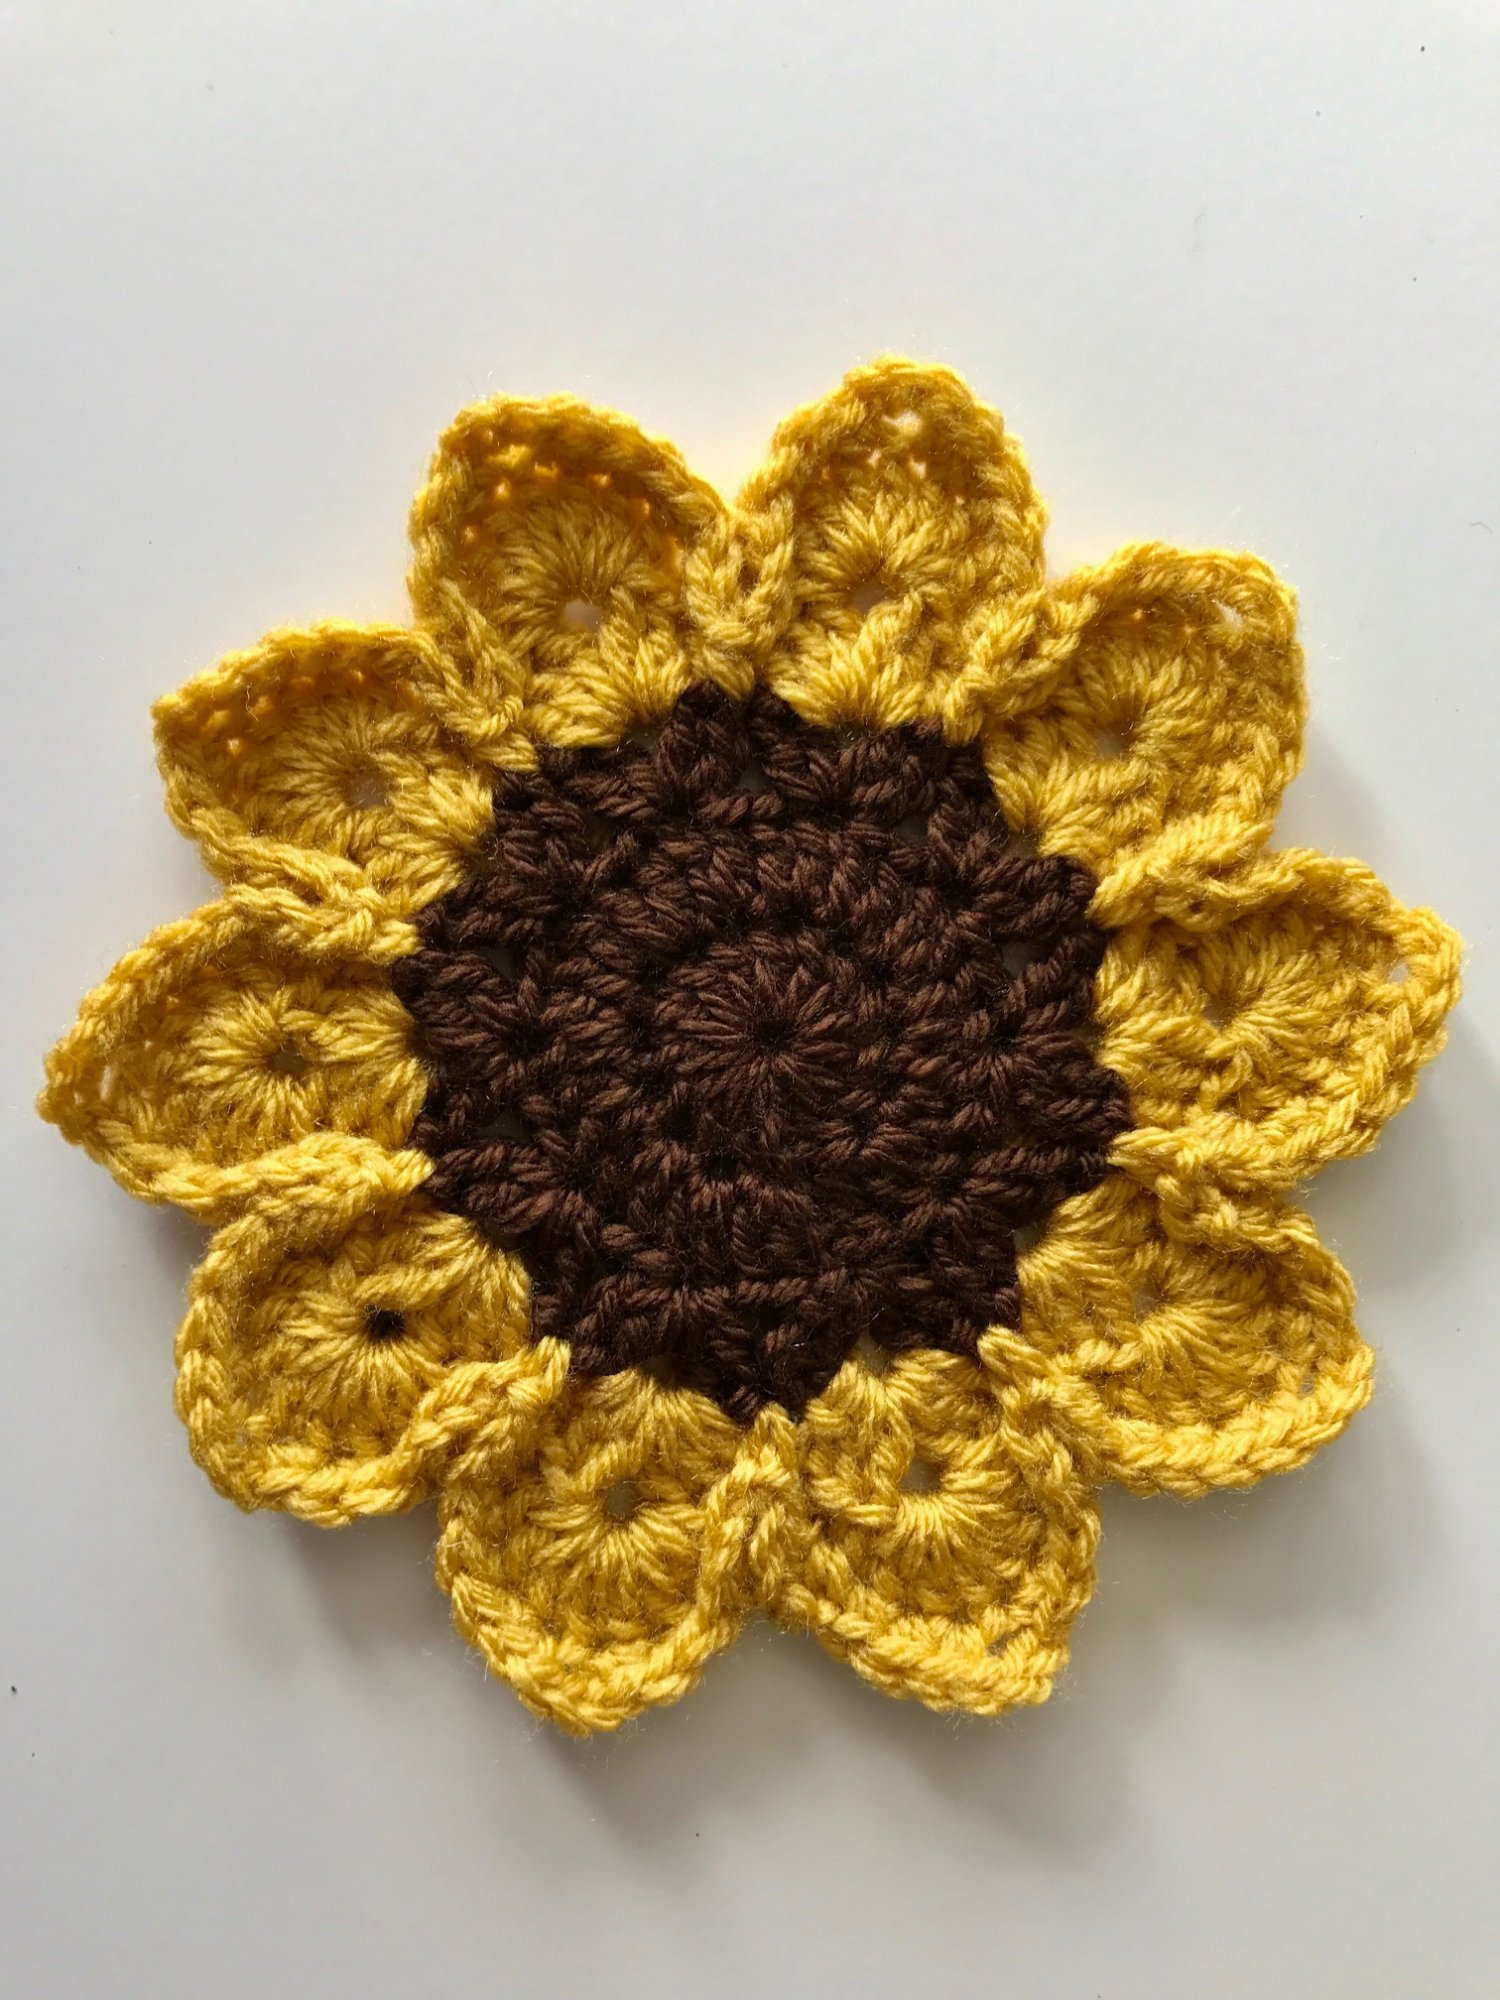 Sunflower crochet pattern free